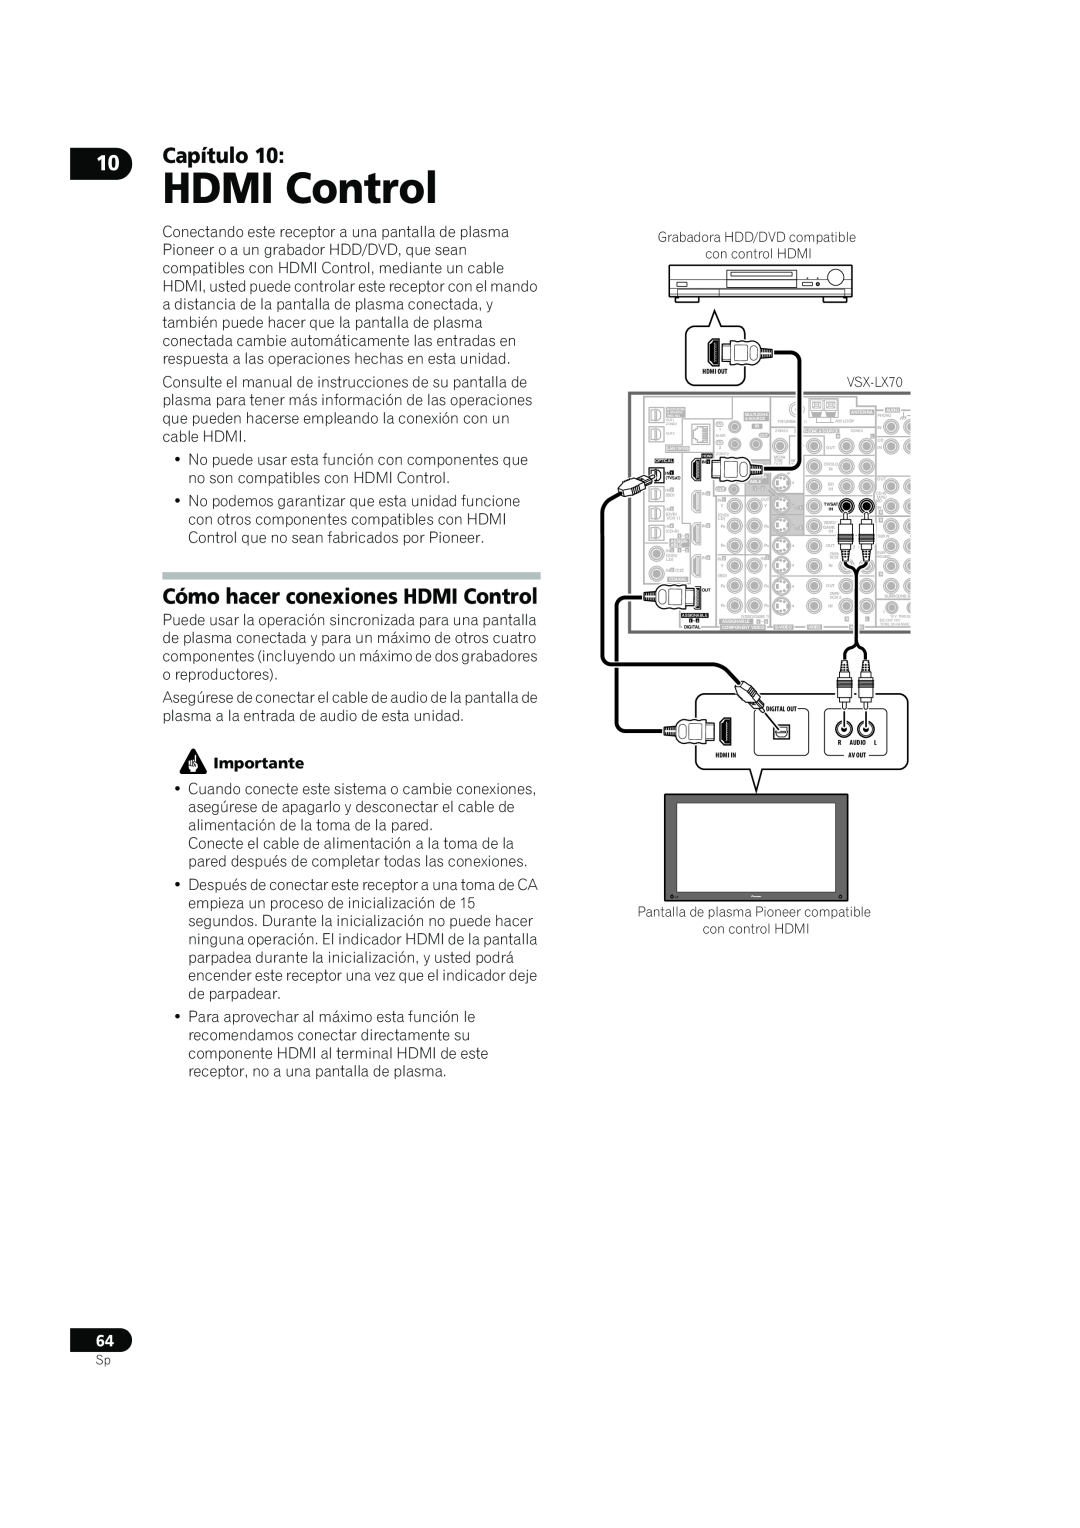 Bernina VSX-LX60, VSX-LX70 manual Cómo hacer conexiones HDMI Control, Capítulo 